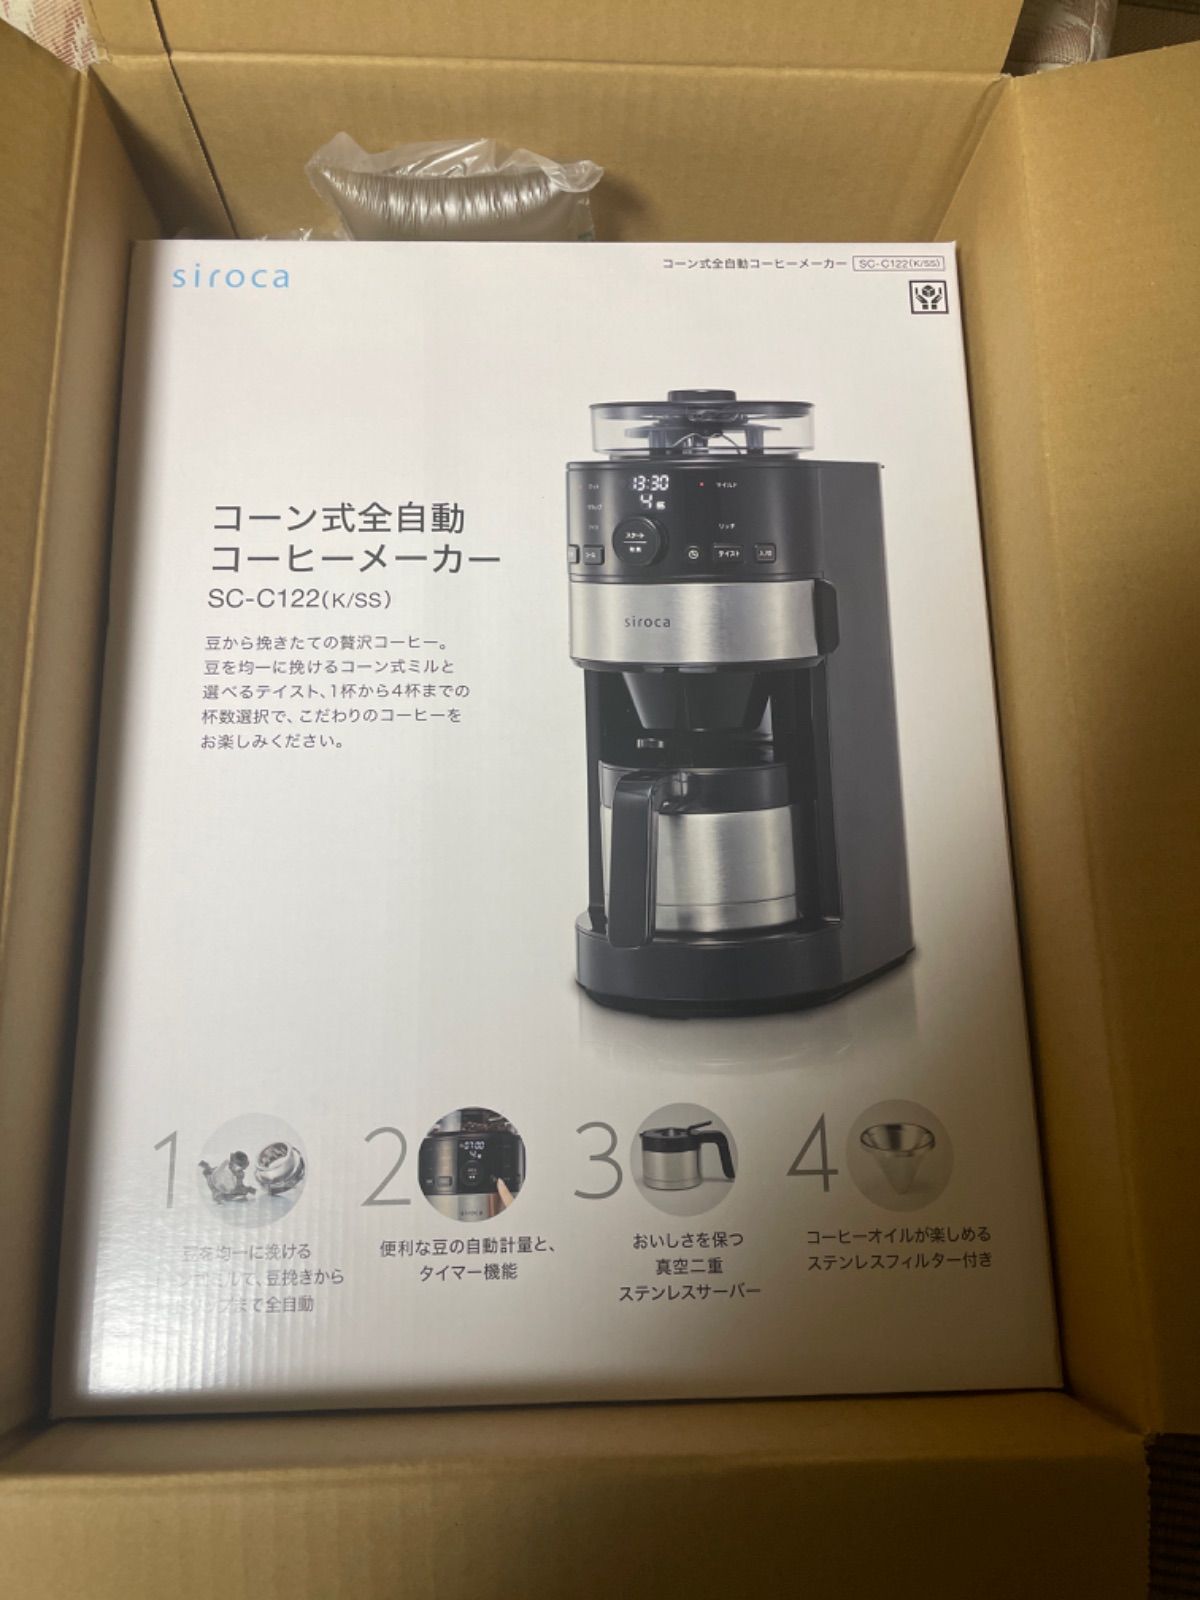 シロカ siroca コーン式全自動コーヒーメーカー SC-C122 - コーヒー 